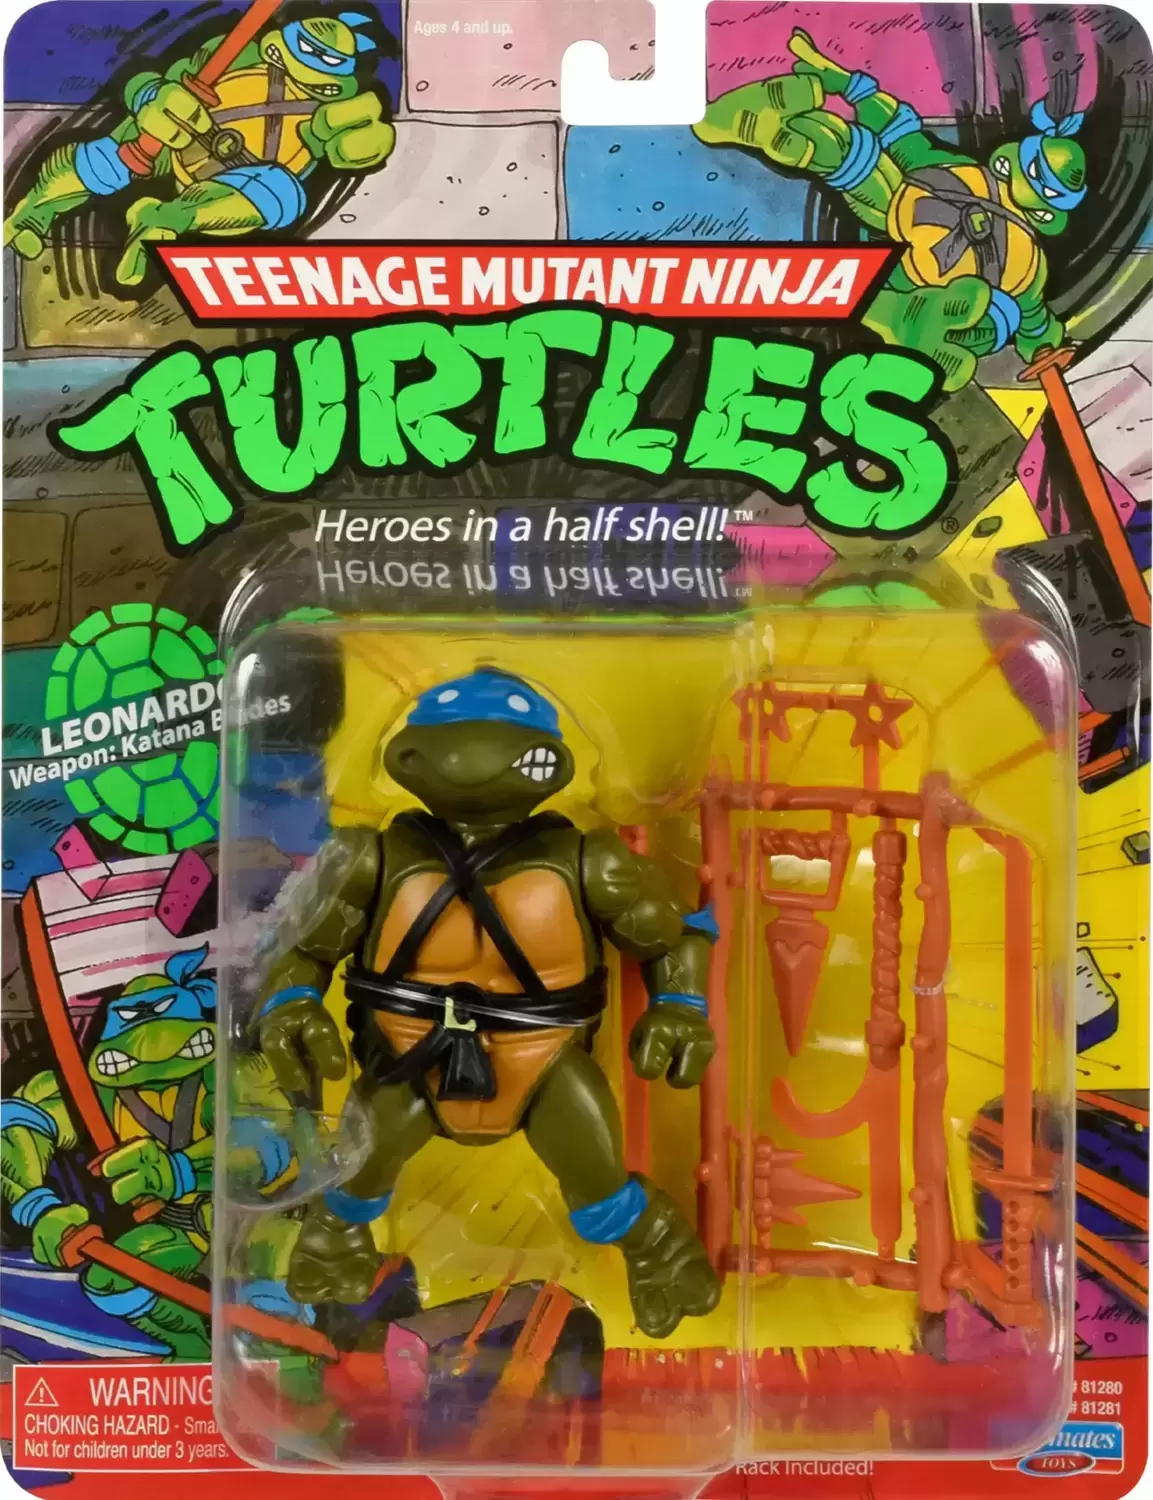 Figurine Leonardo - Tortues Ninja 1988